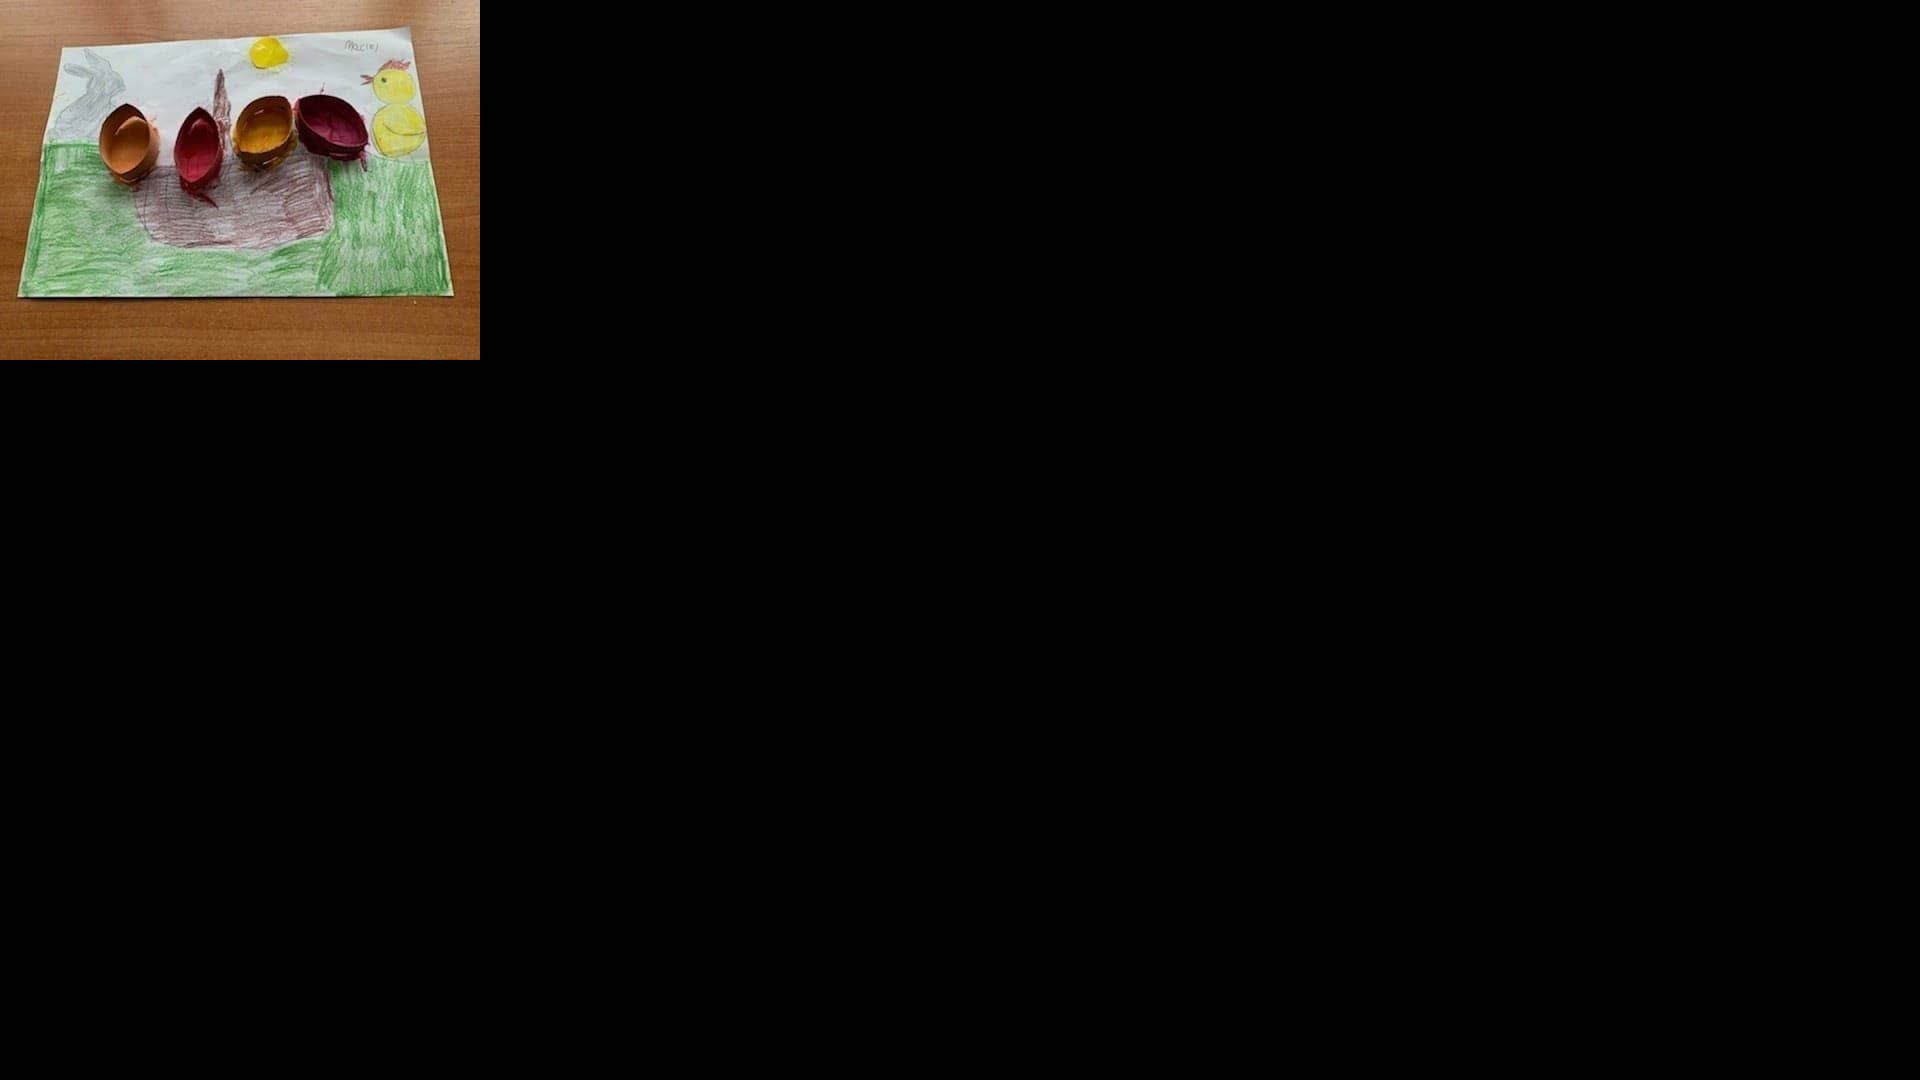 Kartka wielkanocna wykonana kredkami z dużym brązowym koszyczkiem wielkanocnym, przyklejonymi i namalowanymi farbami czterema pisankami (pomarańczowa, żółta, czerwona i bordowa), z lewej strony znadjuje się szary zajączek, z prawej żółty kurczaczek, koszyczek jest ustawiony na zielonej trawie. Autor: Maciej A.